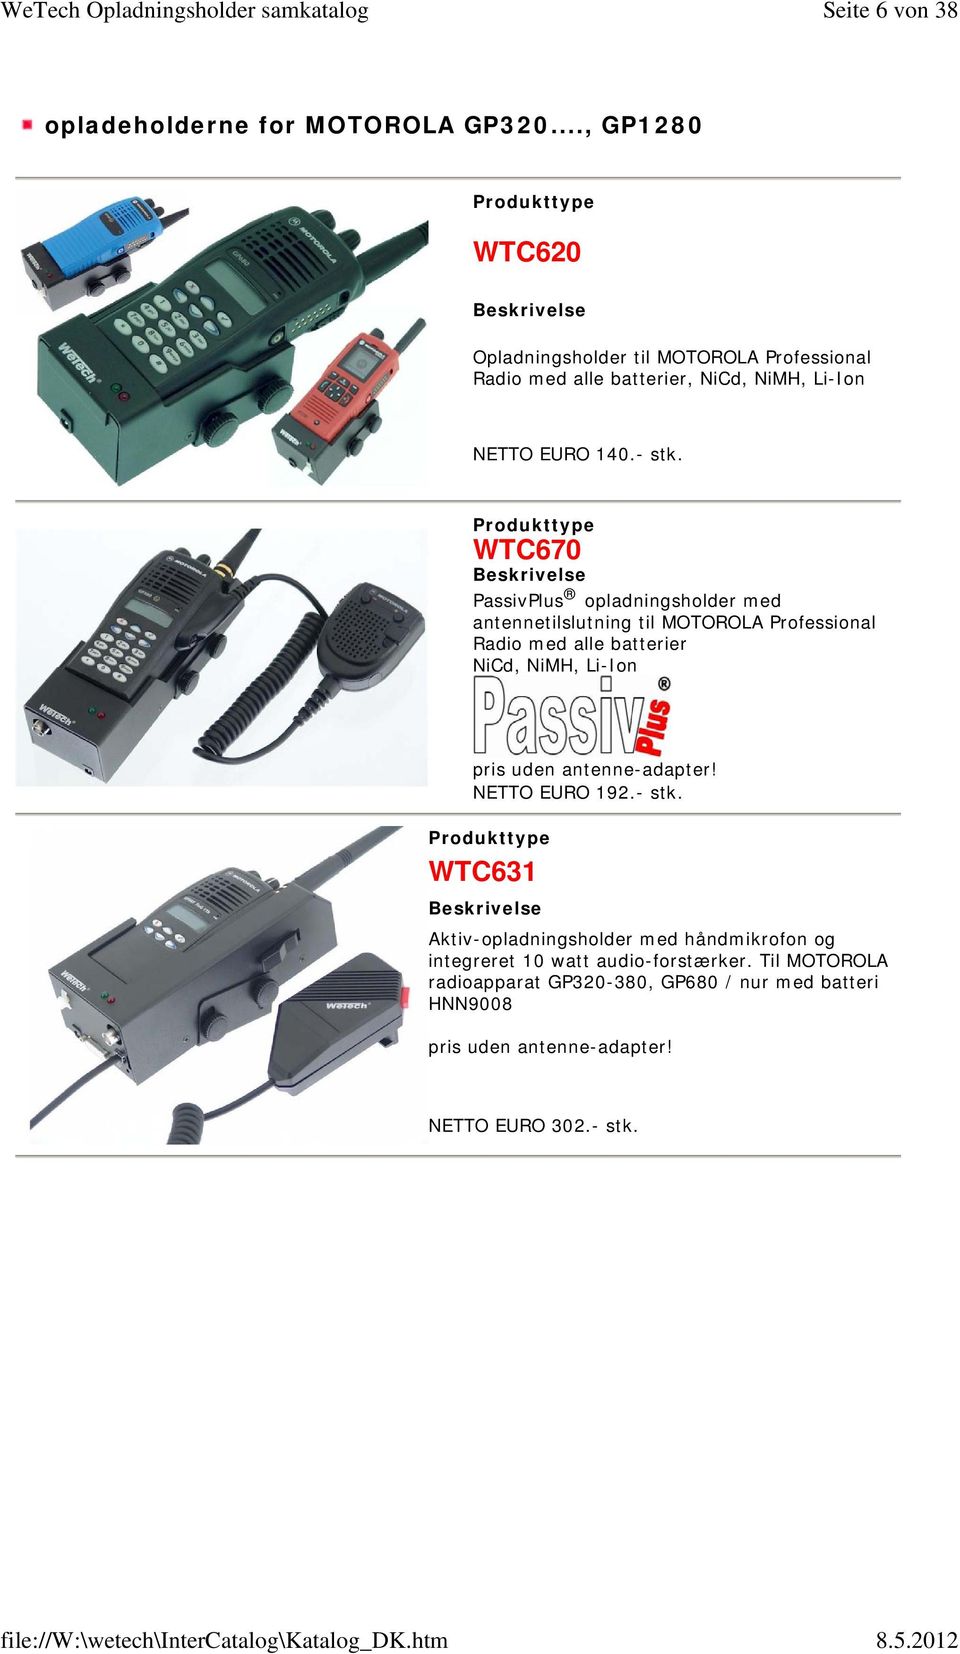 WTC670 PassivPlus opladningsholder med antennetilslutning til MOTOROLA Professional Radio med alle batterier NiCd, NiMH, Li-Ion pris uden